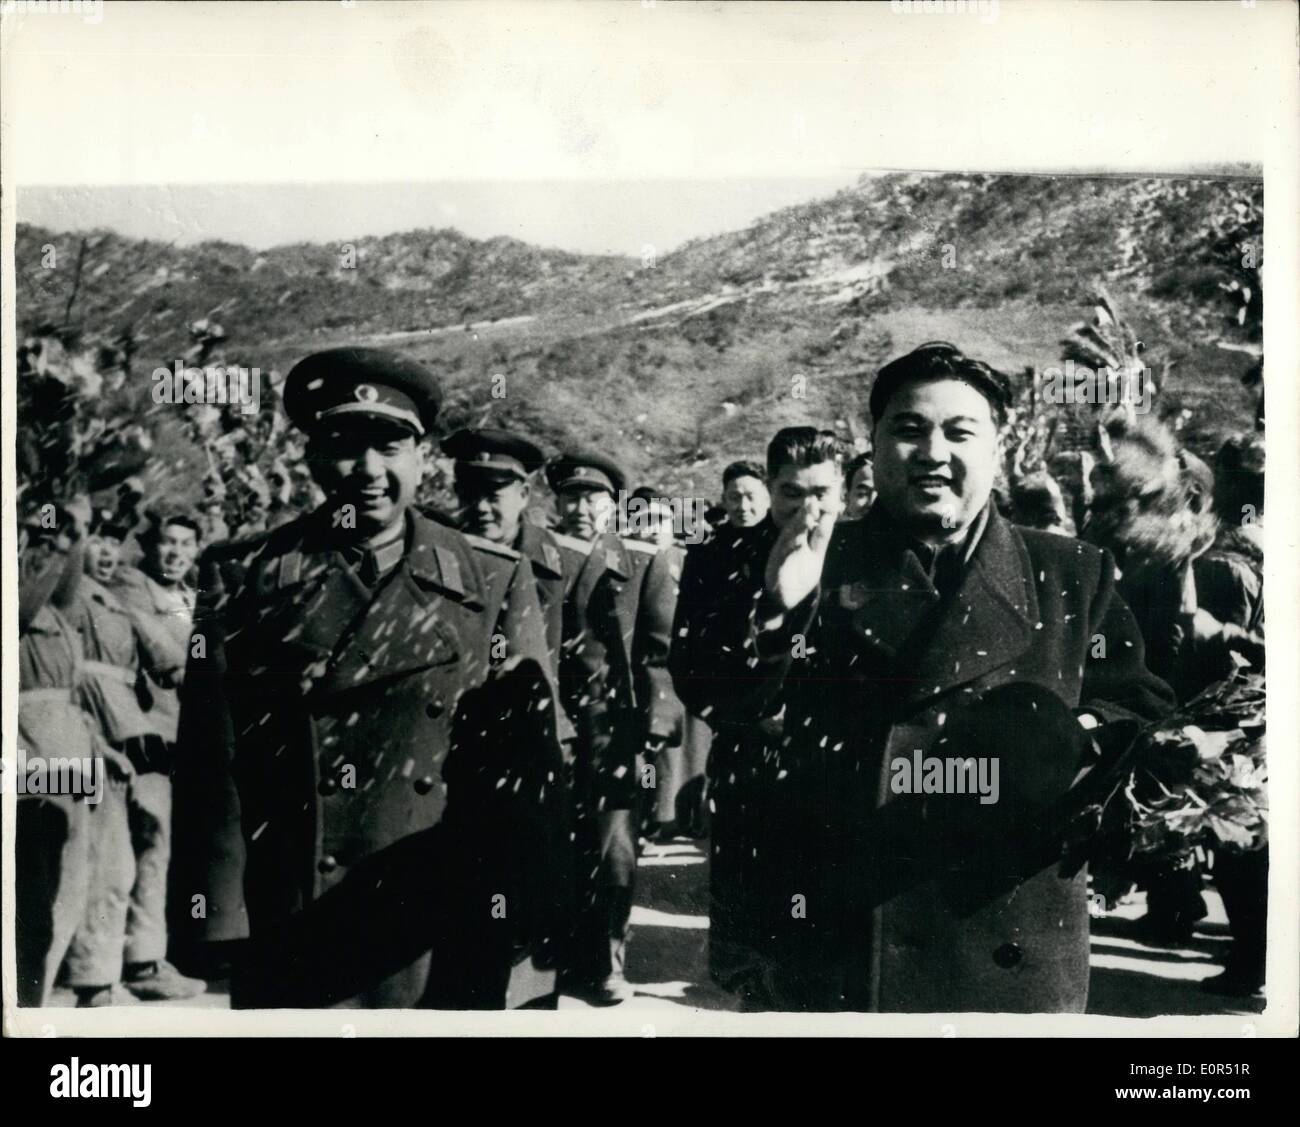 Mar 03, 1958 - Le truppe Cinesi lasciare la Corea. Il primo ministro Kim II Sung (destra) della Corea del Nord porta un grande invia - off partito per questa popolare cinese truppe di volontari guidati dal generale Yang Yung, comandante dell'esercito comunista (sinistra) , prima dell'inizio dell'evacuazione in massa dei cinesi truppe dalla Corea del Nord di recente. Foto Stock